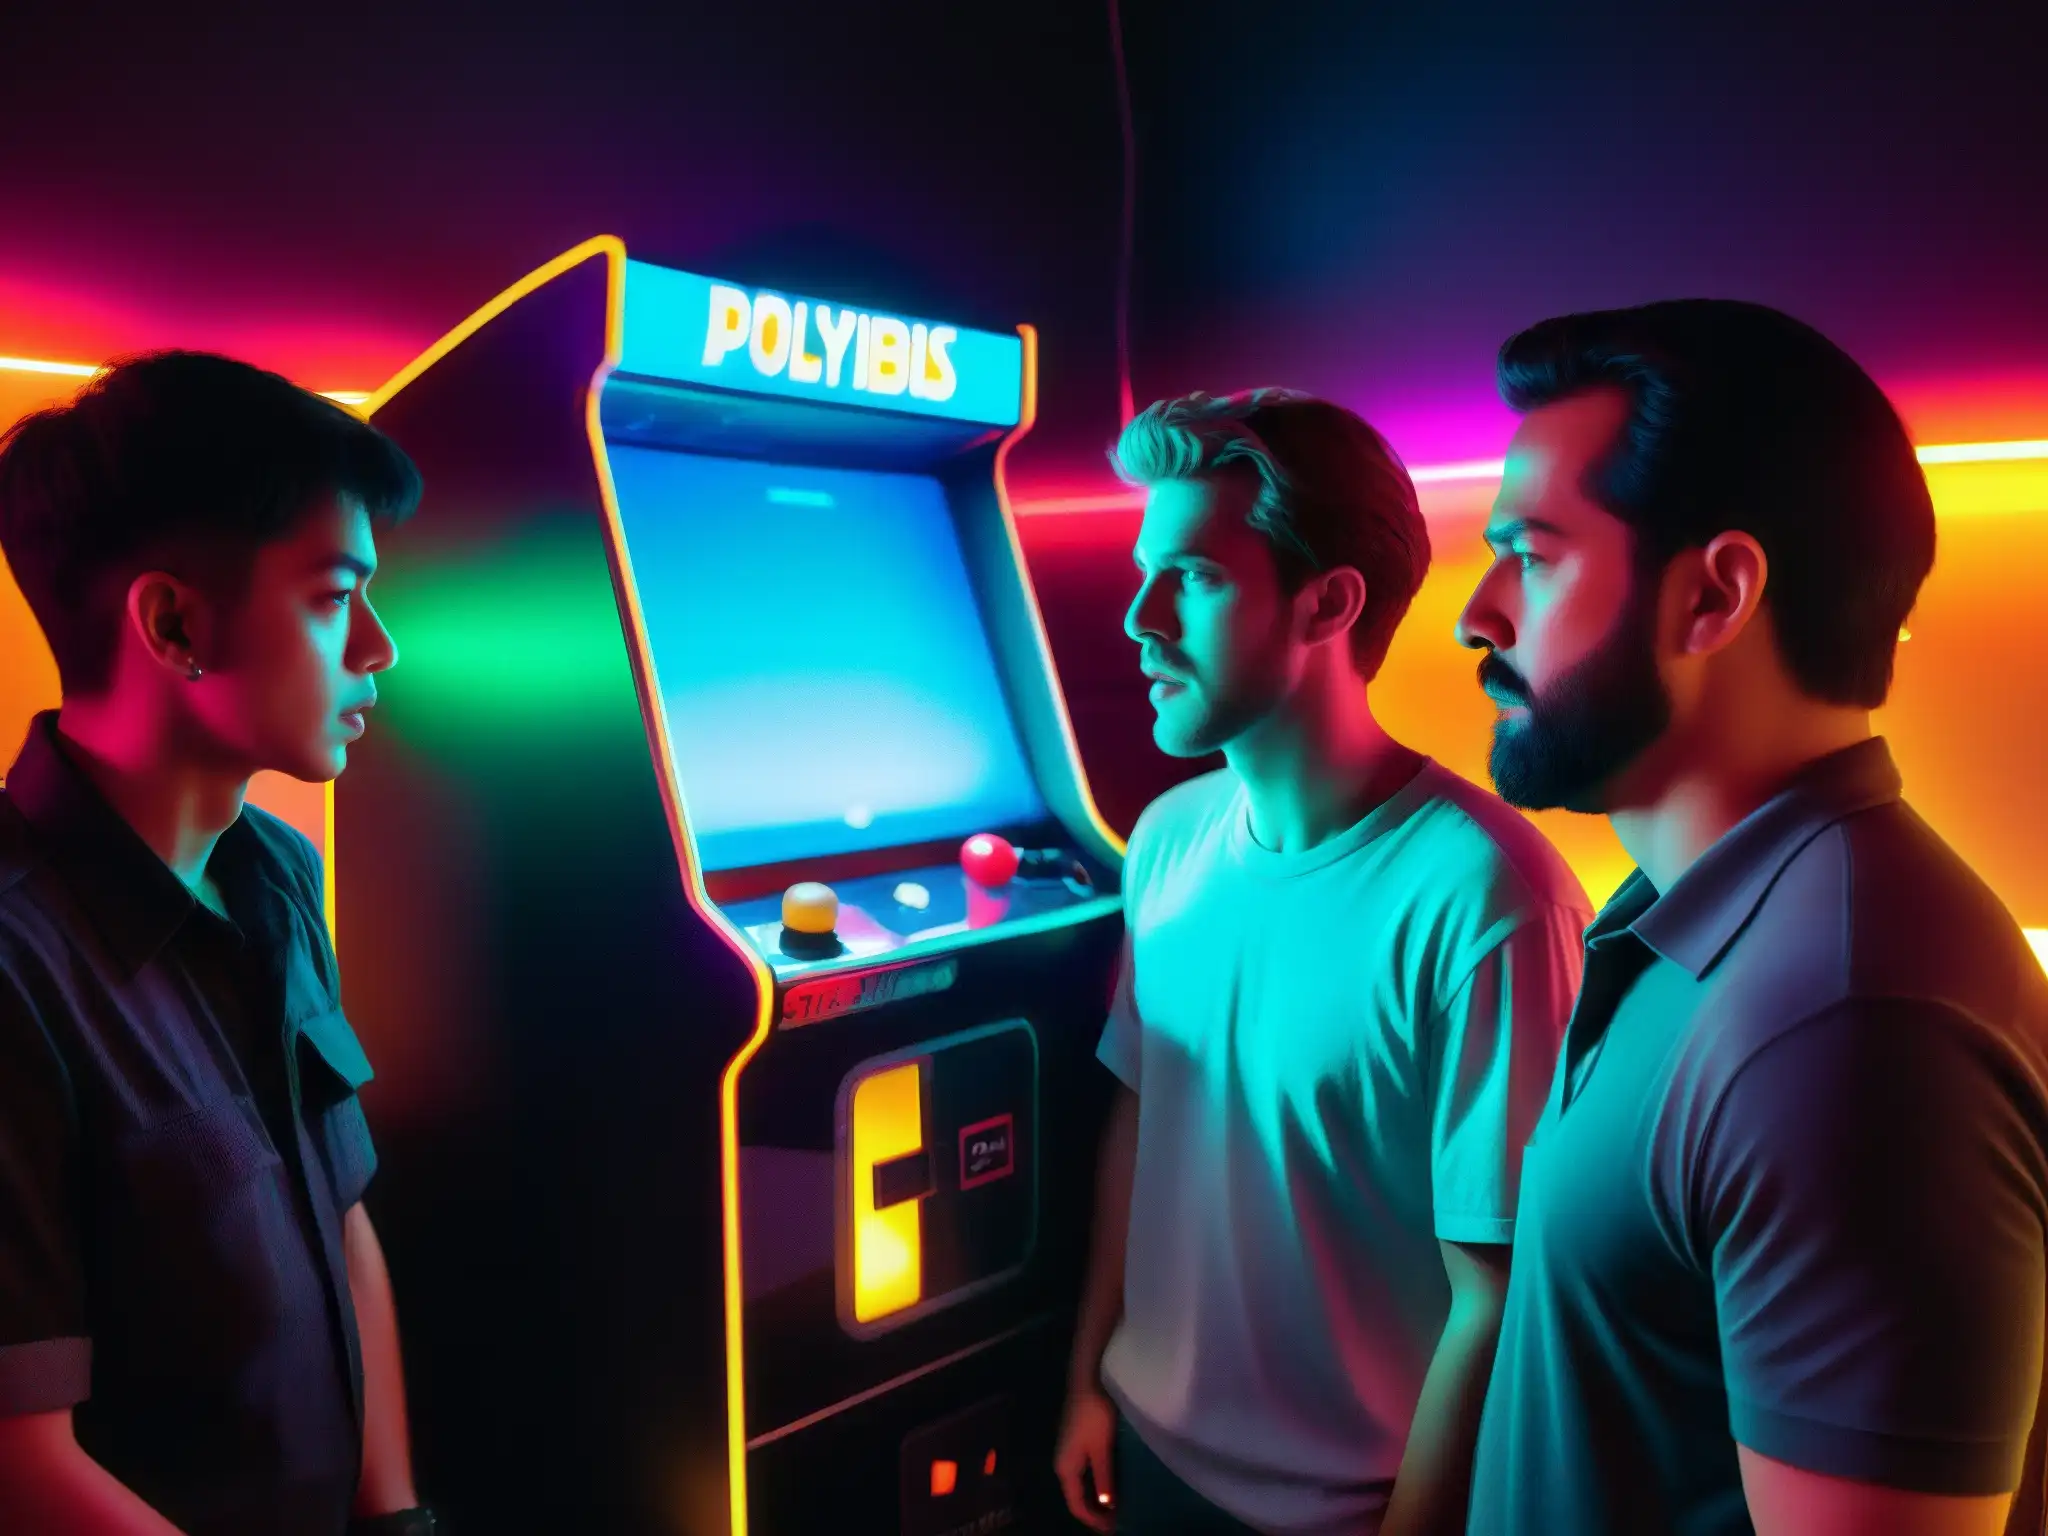 Un grupo de personas juega con intensidad el misterioso juego Polybius en una antigua máquina arcade